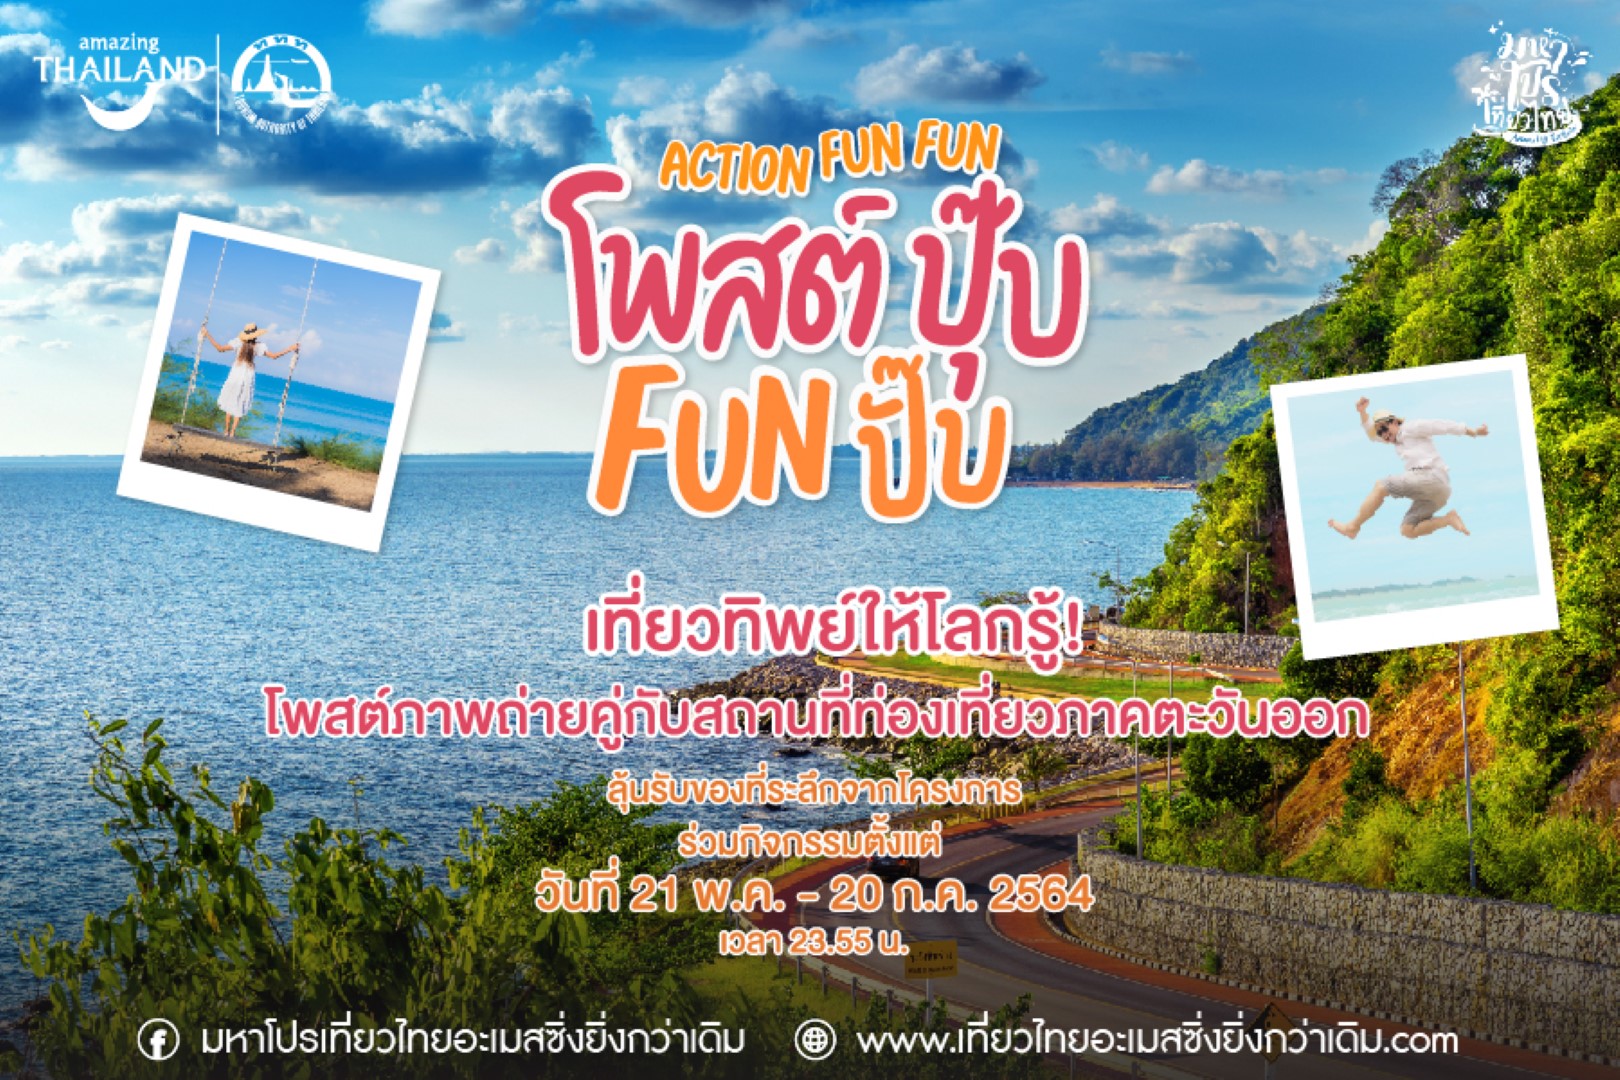 ททท. คลายเหงาด้วยแคมเปญ Action Fun Fun ชวนคนไทยเที่ยวทิพย์ อวดความสนุกสีสันตะวันออก ‘More Fun’